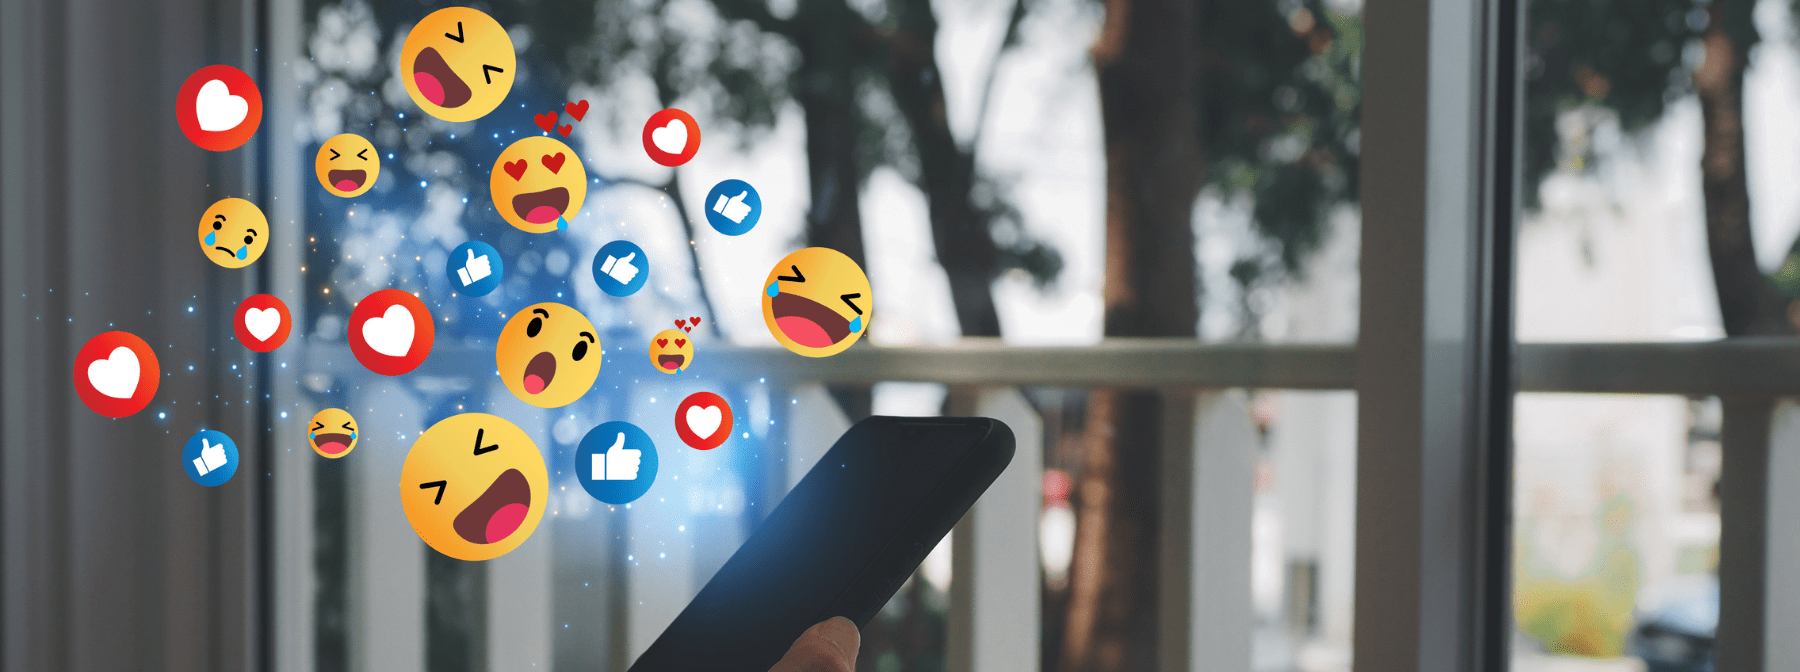 Studie zeigt, dass soziale Medien Stress und Unzufriedenheit auslösen